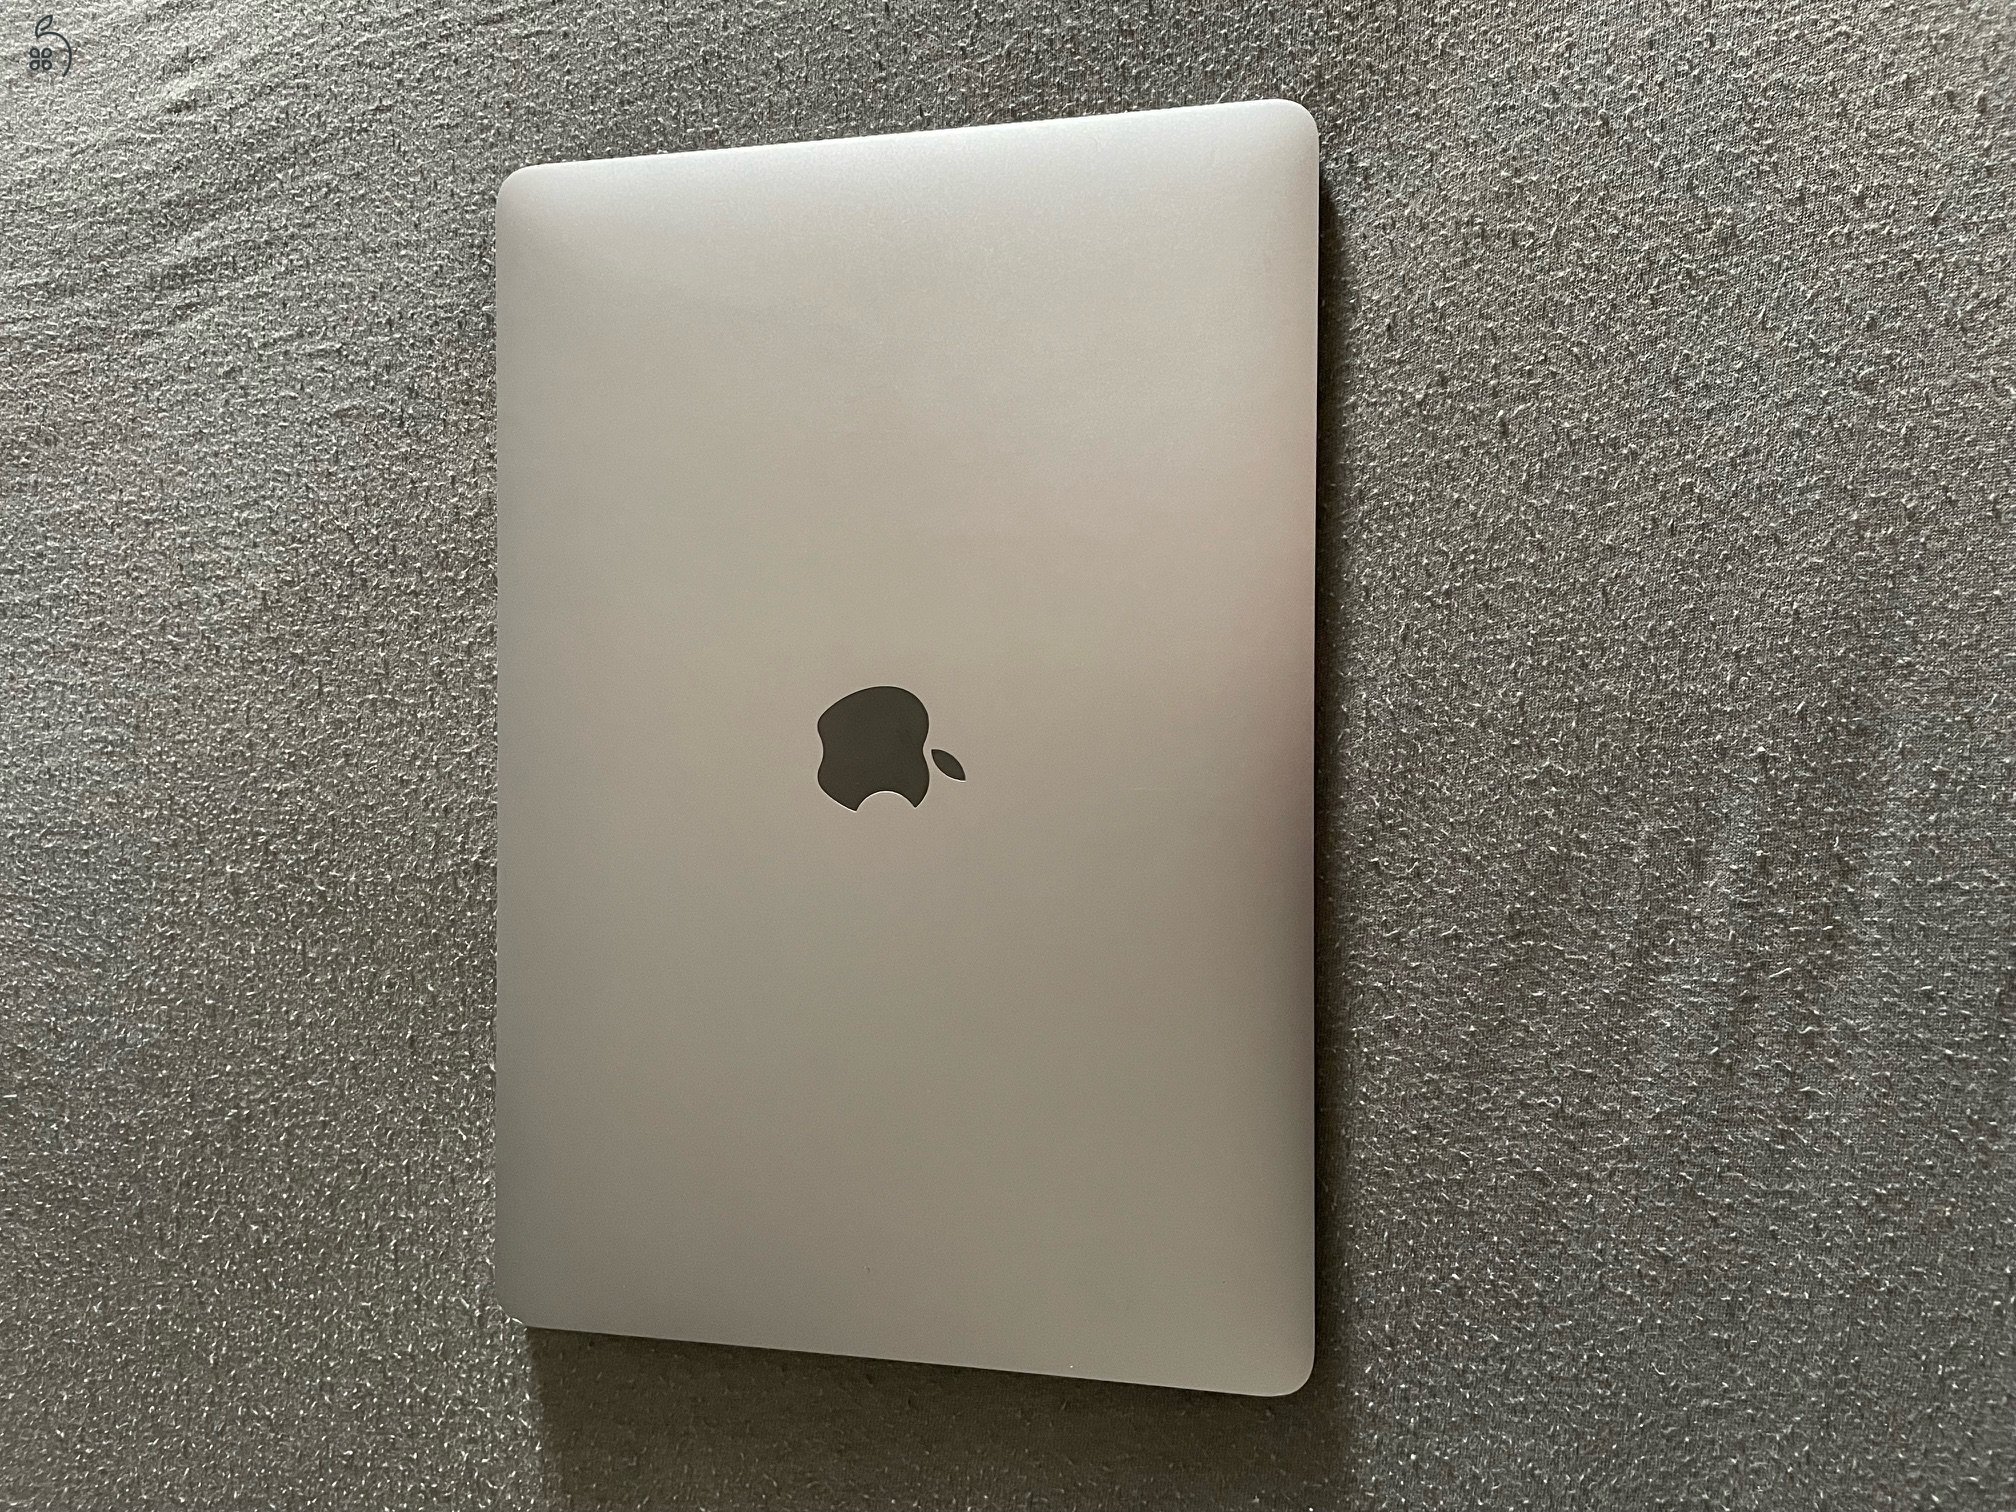  Apple MacBook Air 13